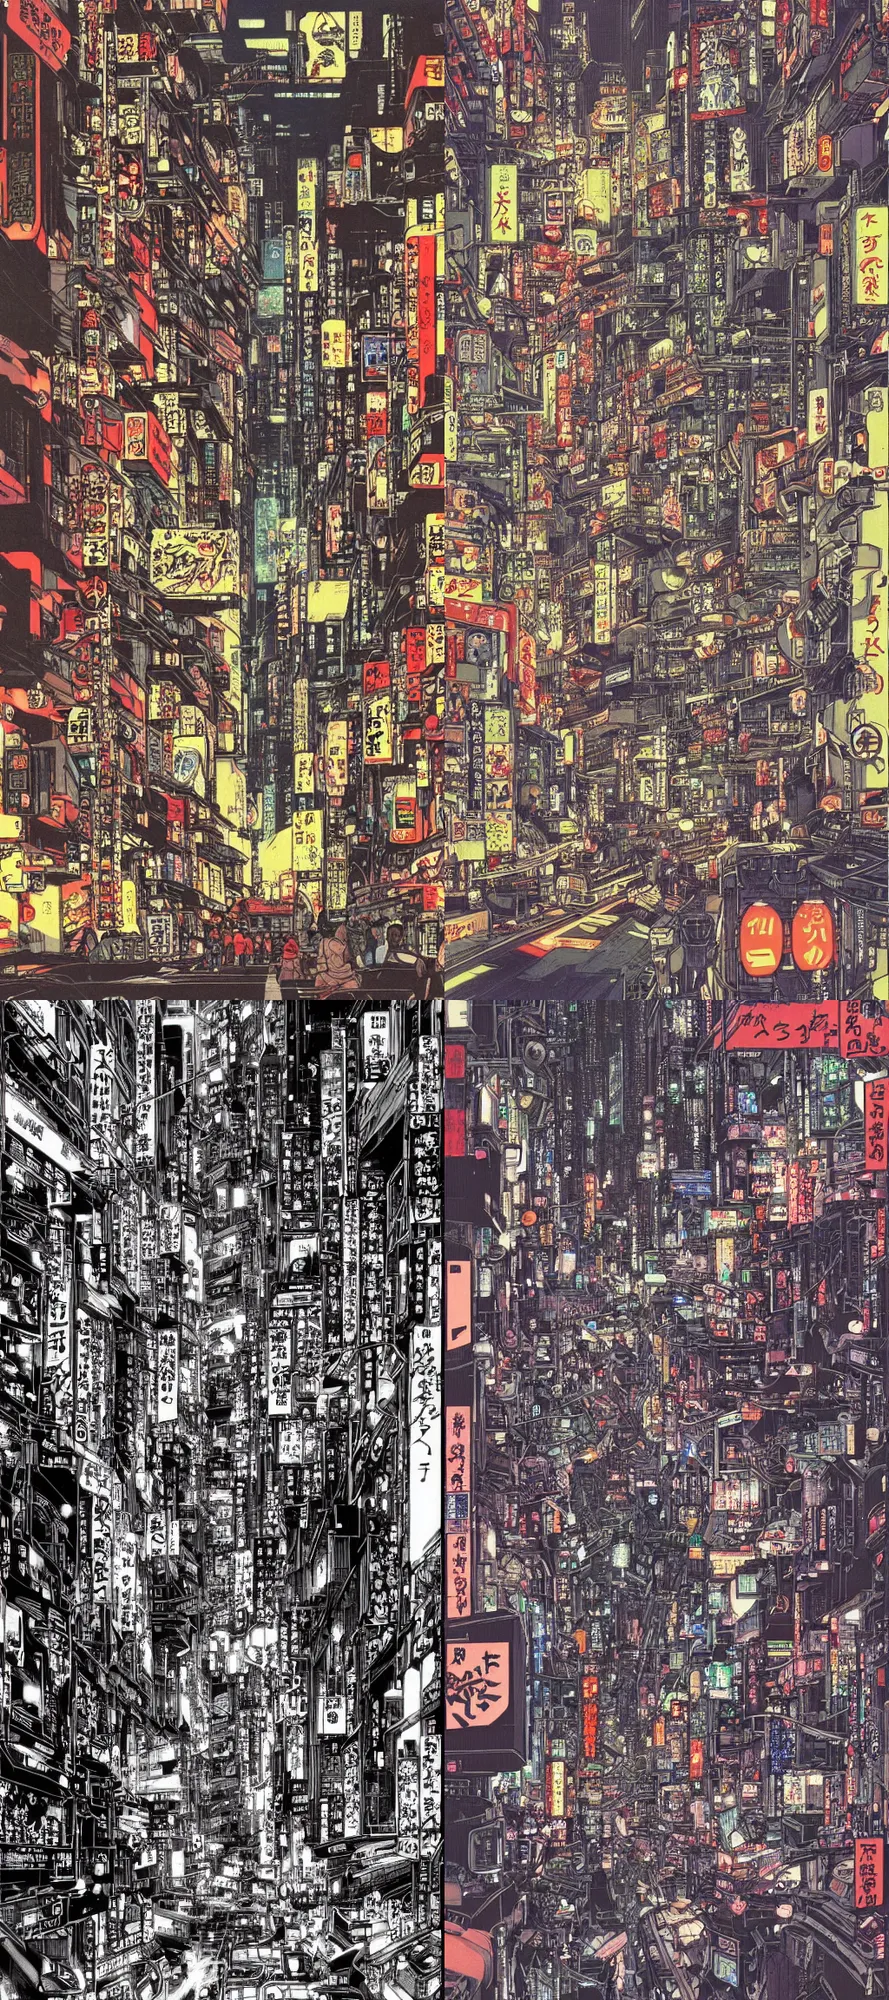 Prompt: beautiful hypercomplex anime drawing of an AKIRA-like cyberpunk city landscape, japan at night, 1980s, by Katsuhiro Otomo, wide angle, grand